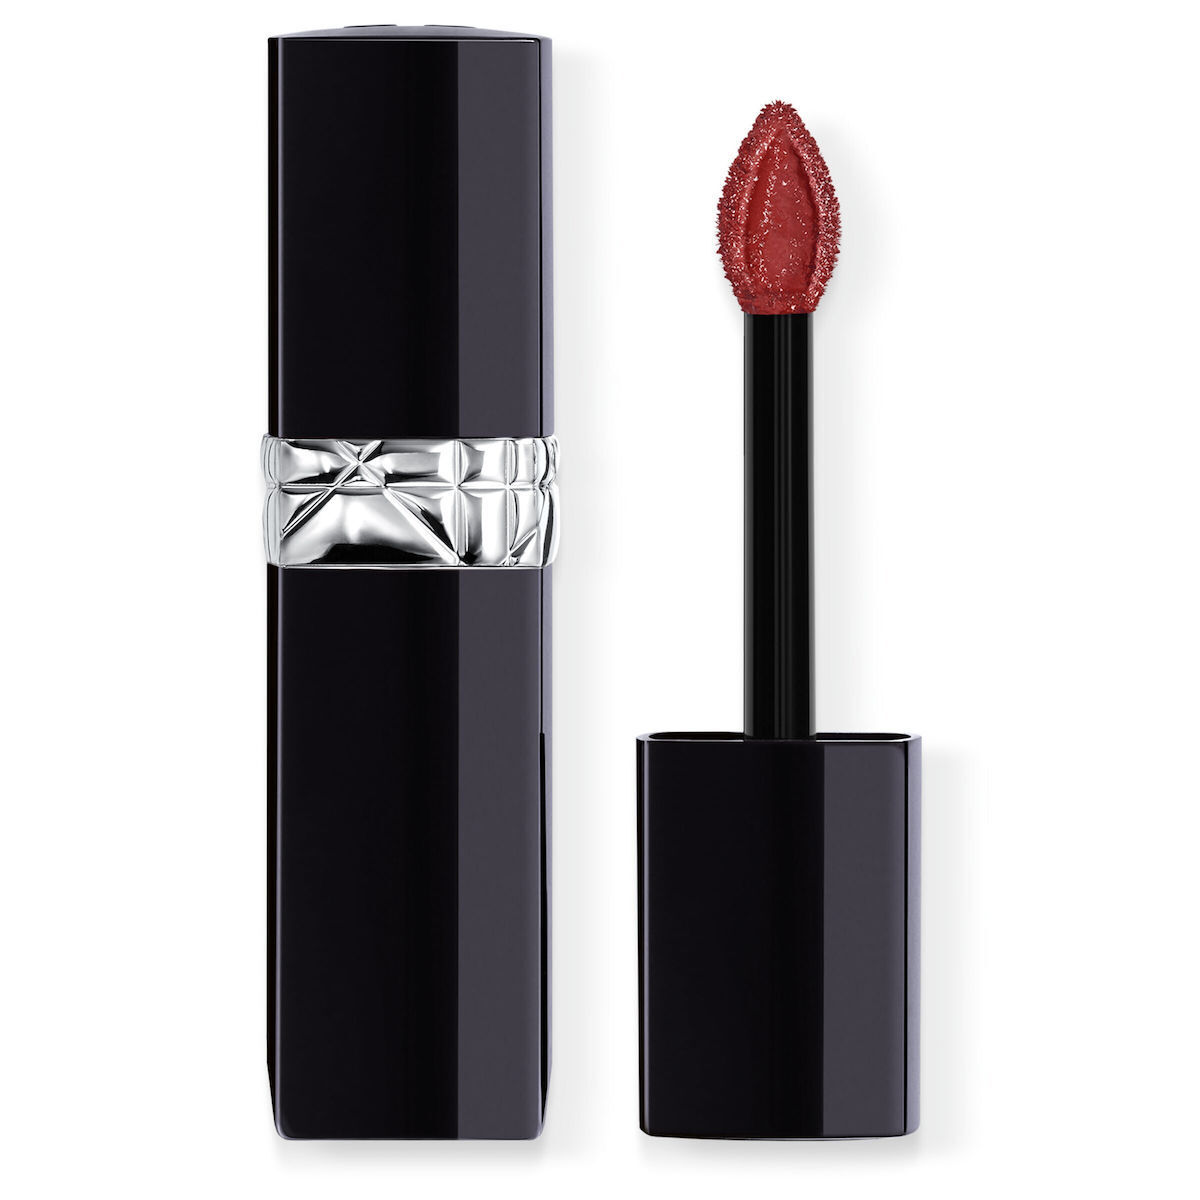 Dior Addict Refillable Shine Lipstick 720 Icone